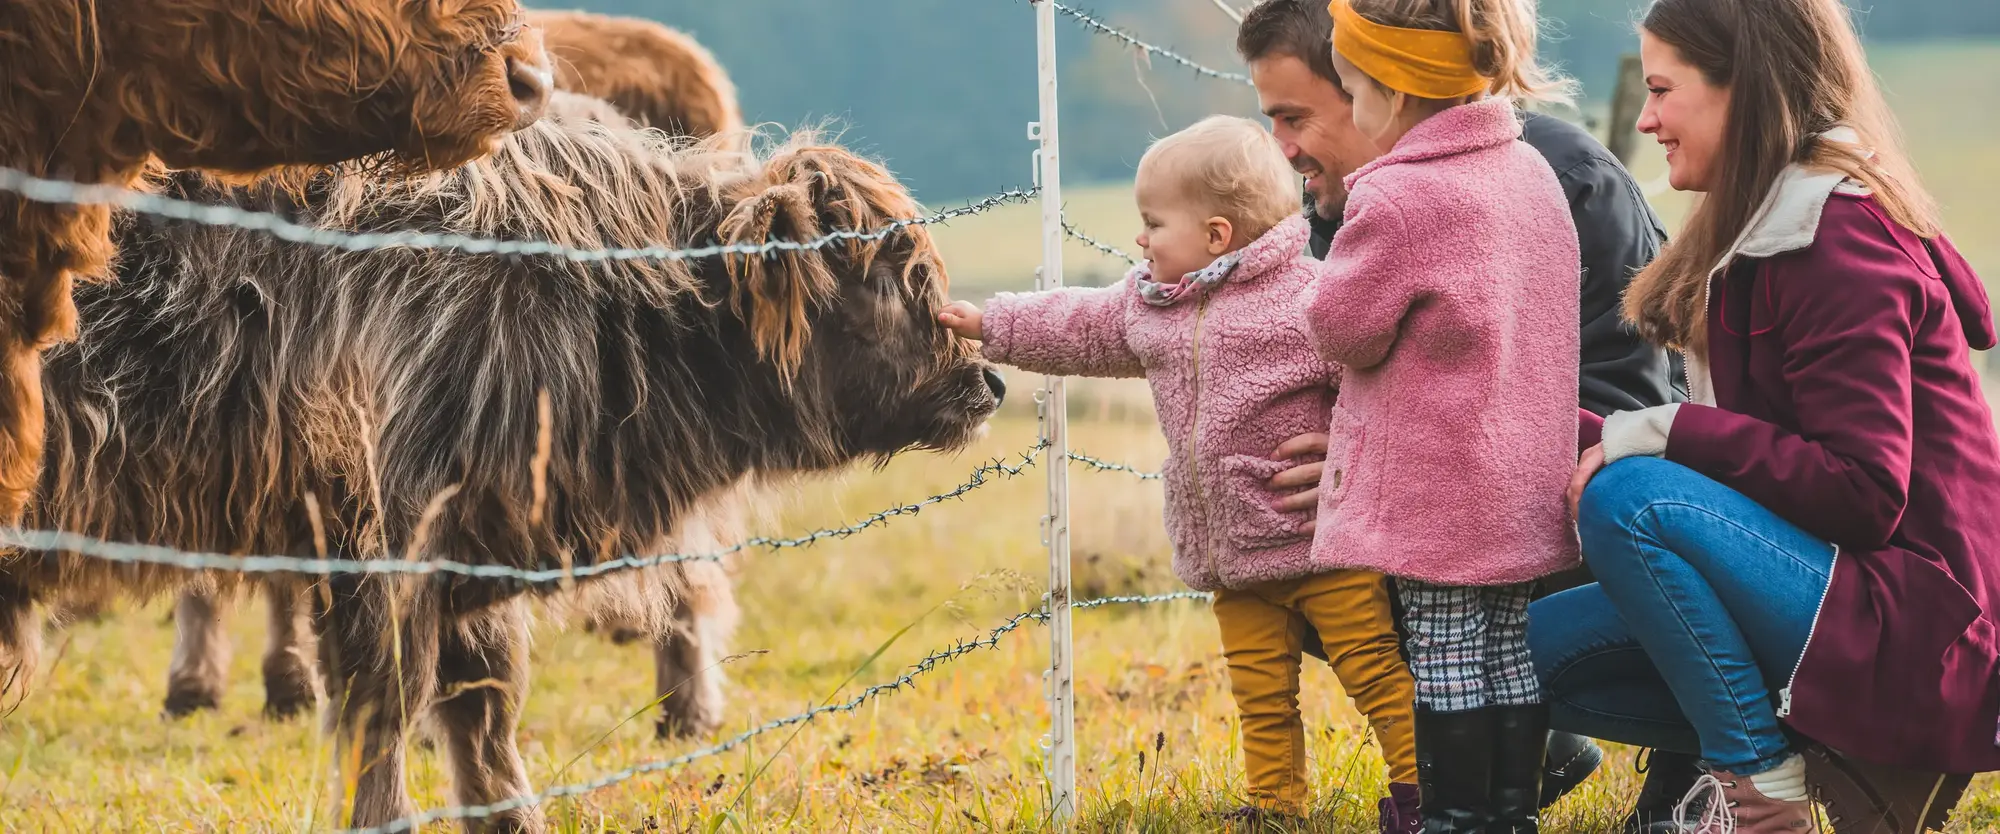 Eine Familie mit zwei Kindern hockt vor einem Weidezaun und streichelt eine Kuh an der Schnauze.